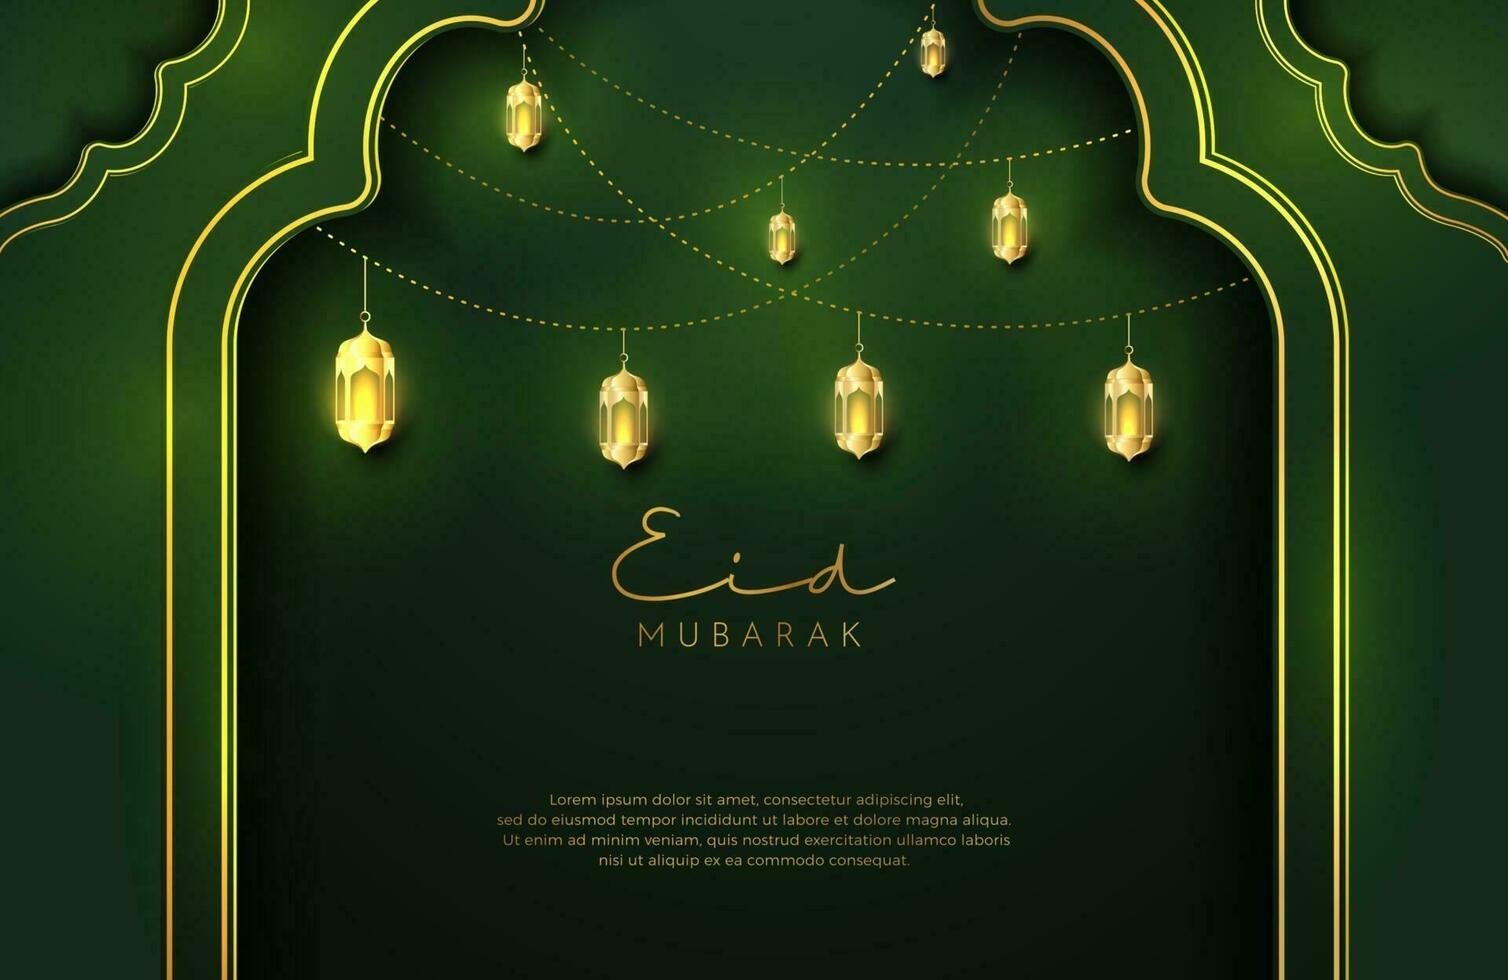 fond eid mubarak dans un style de luxe illustration vectorielle de design islamique vert foncé avec lanterne en or ou fanoos pour les célébrations du mois sacré islamique vecteur